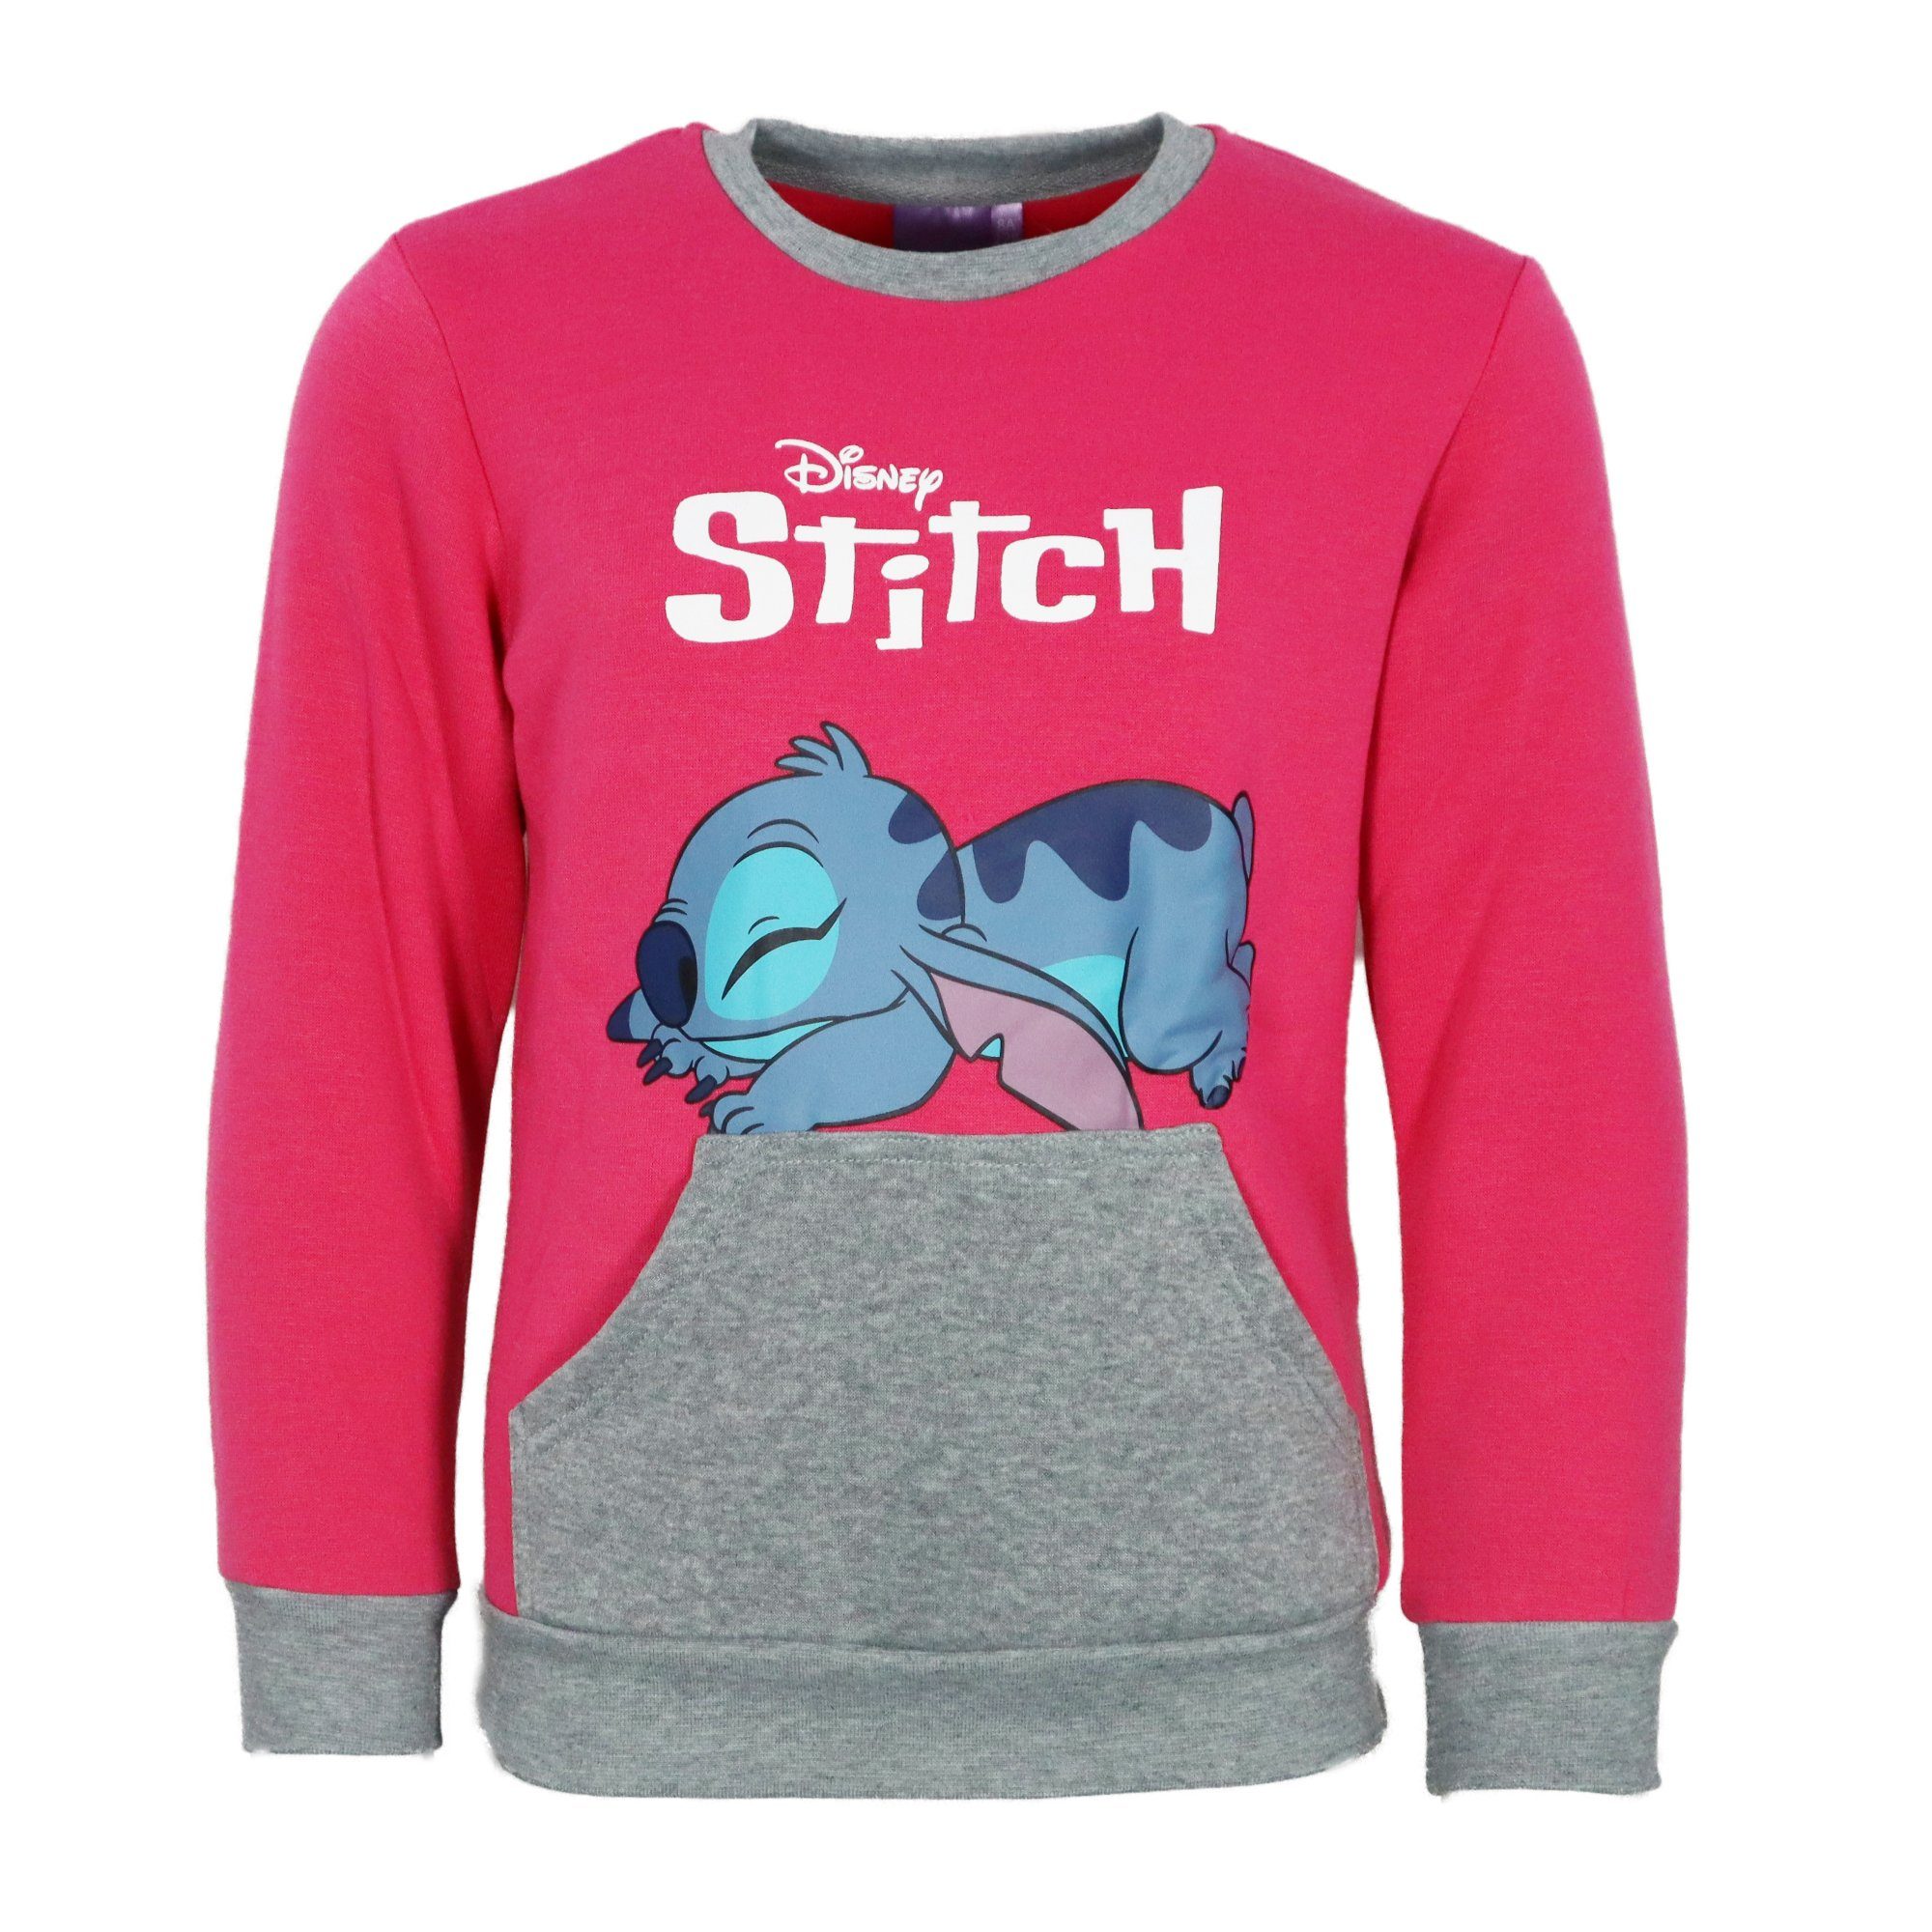 Disney Jogginganzug Kinder Pink Sweater, bis Fleece Disney 92 Stitch Gr. 128 Hose Joggingset